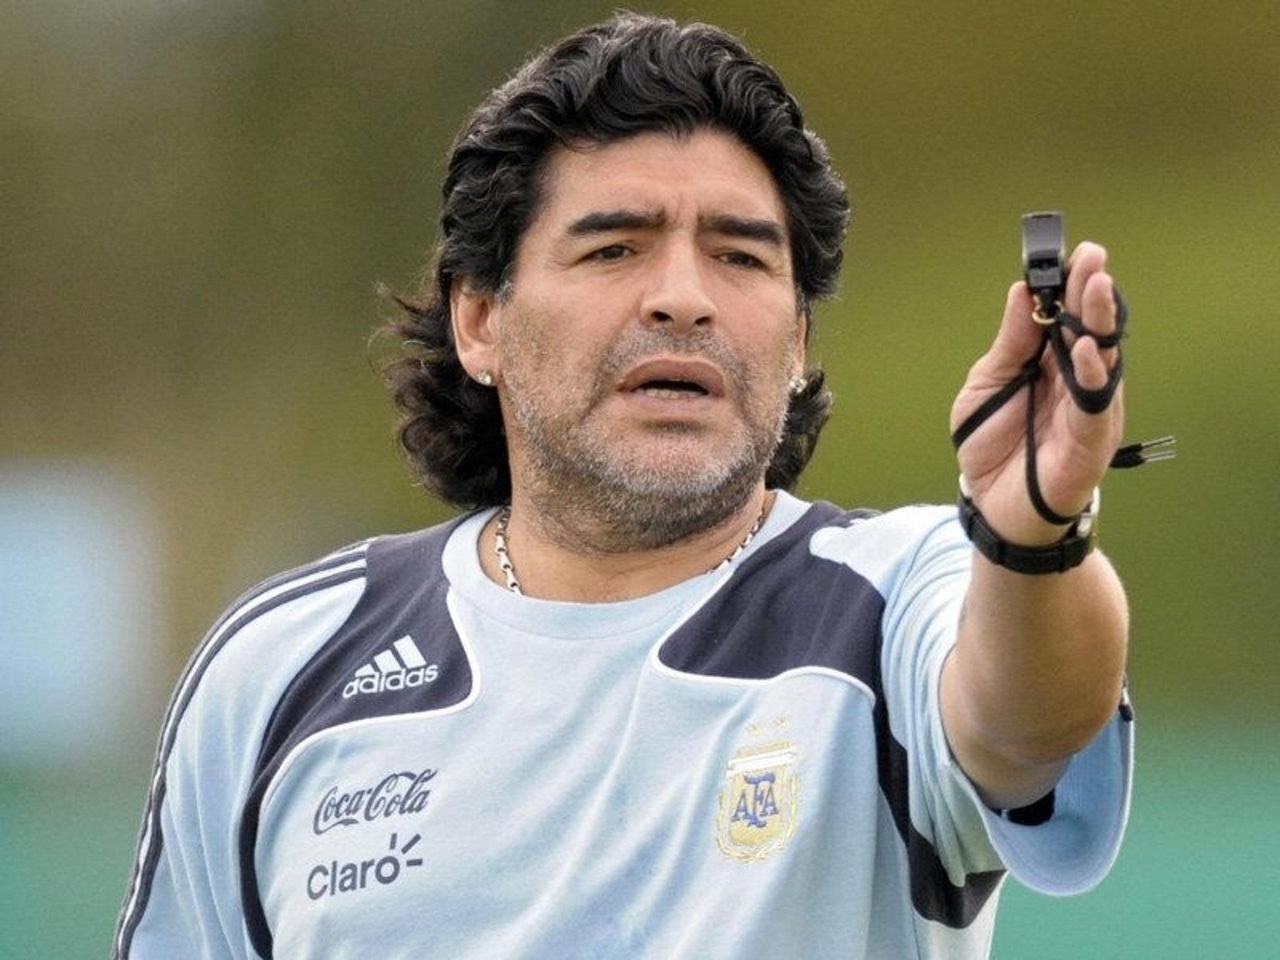 "Bir grup taraftar çalmak isteyince Maradona kalbi olmadan gömüldü"